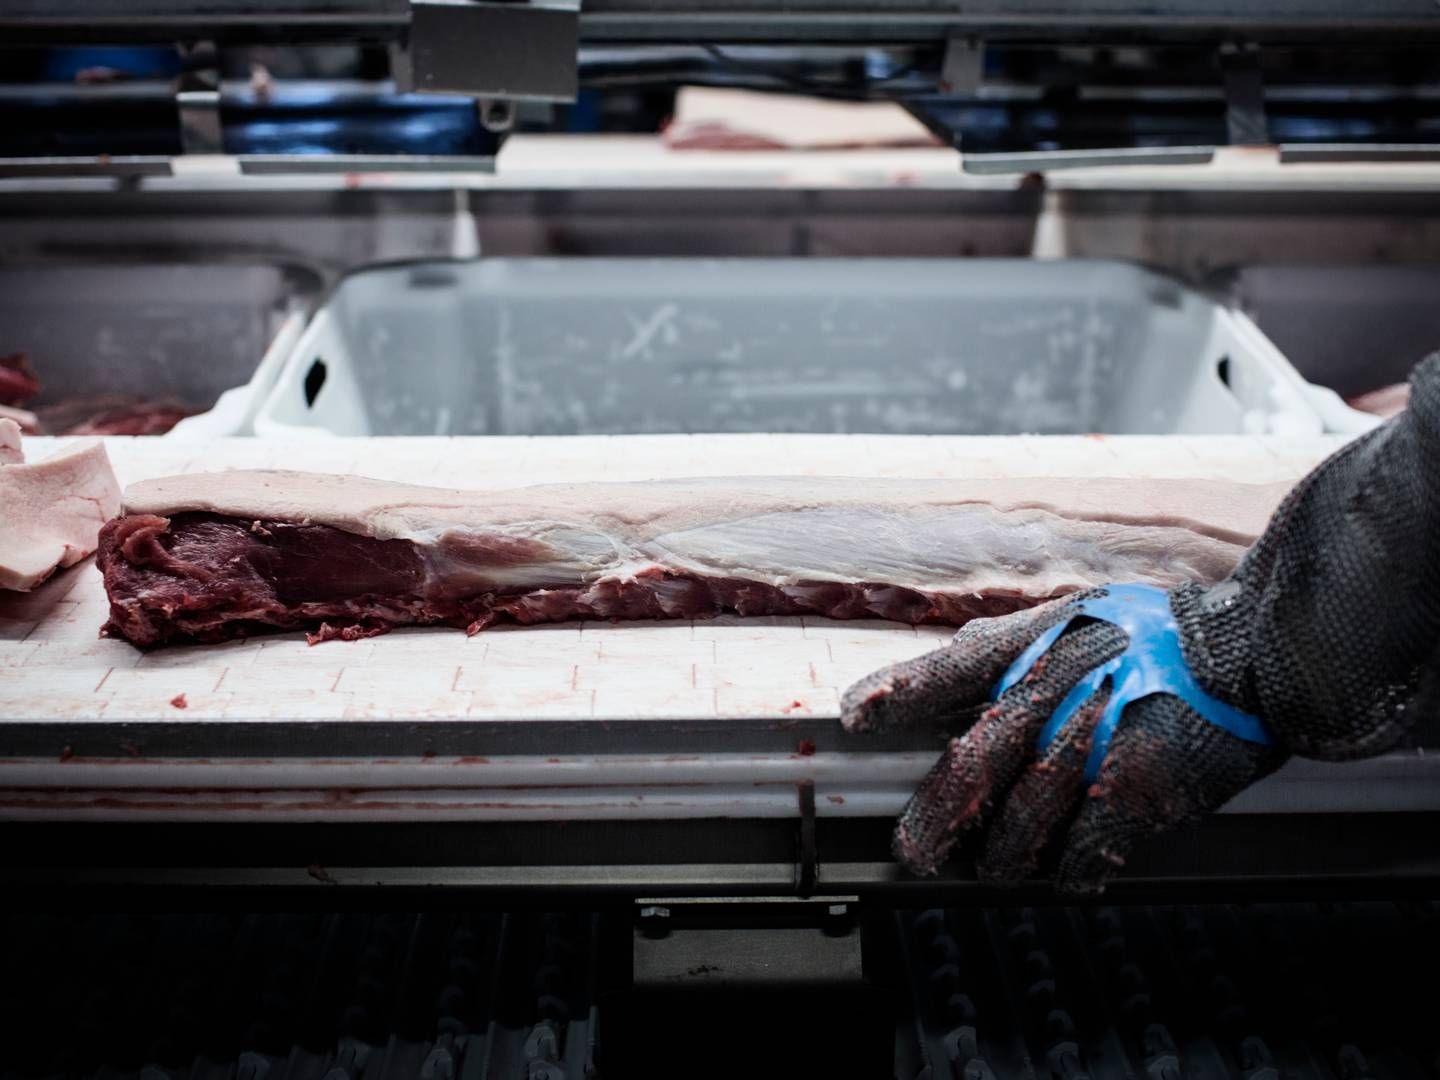 Kina er verdens suverænt største marked for svinekød, og Danmark eksporterer store mængder kød dertil hvert år. | Foto: Thomas Emil Sørensen